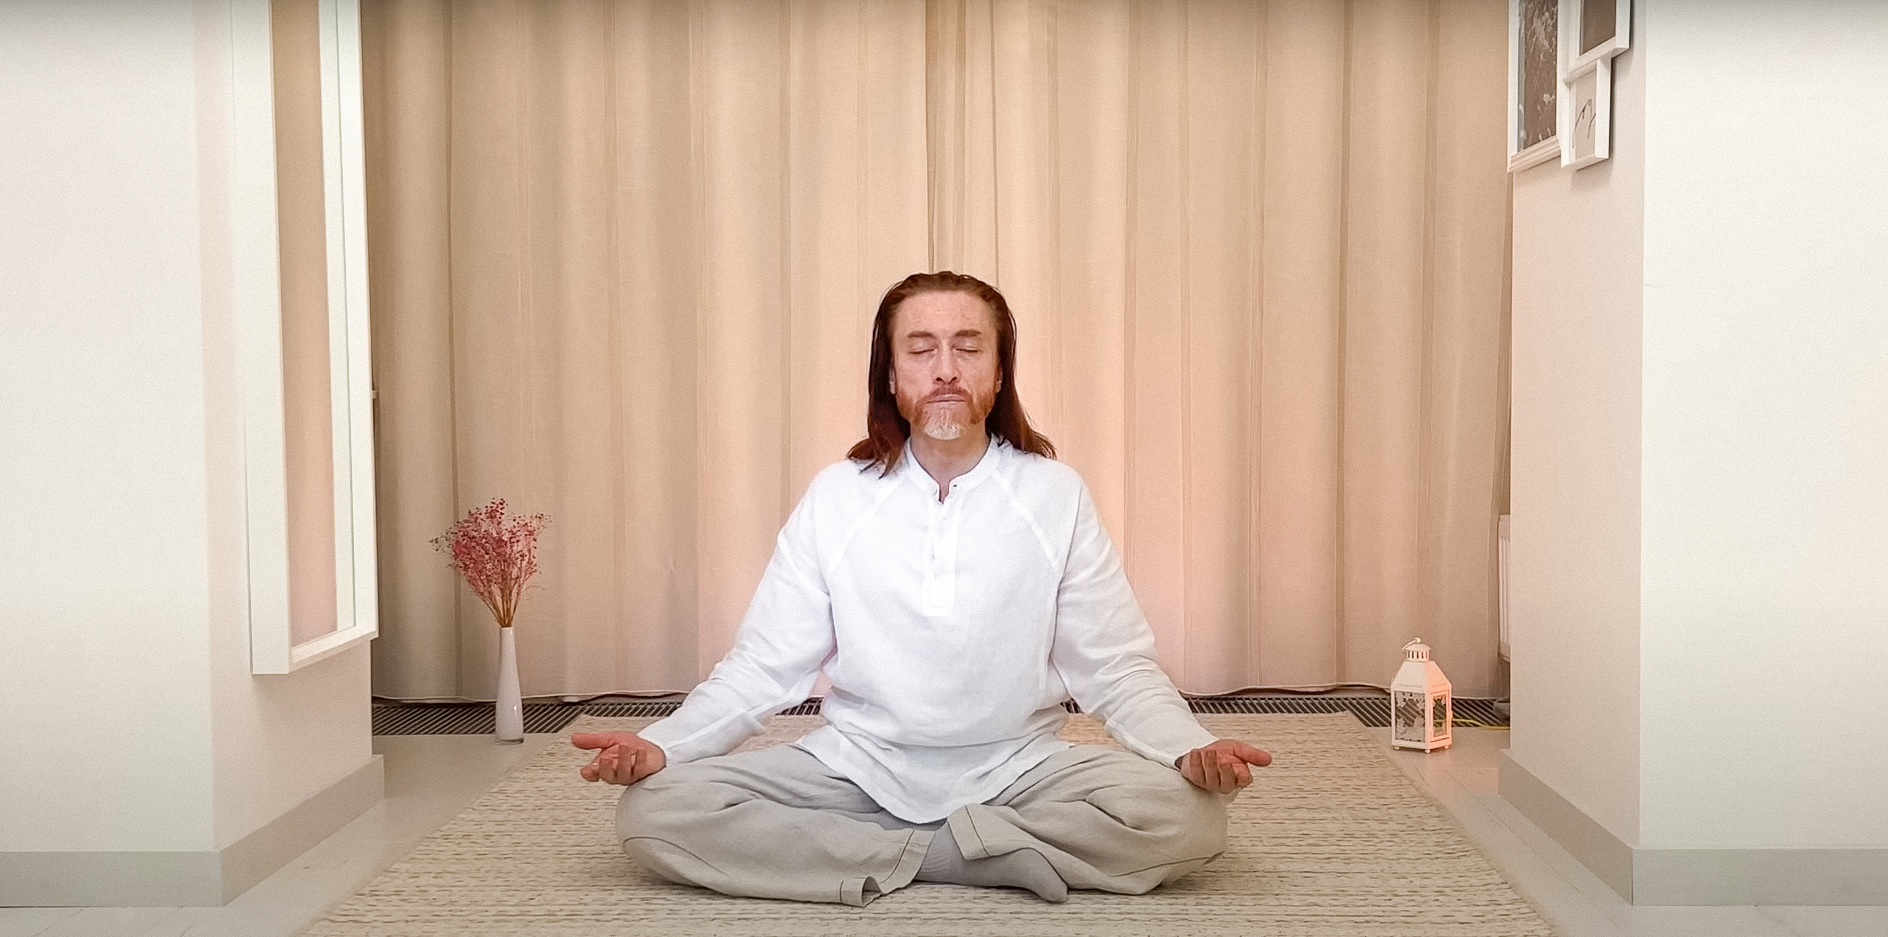 Имрам крийя уроки медитации